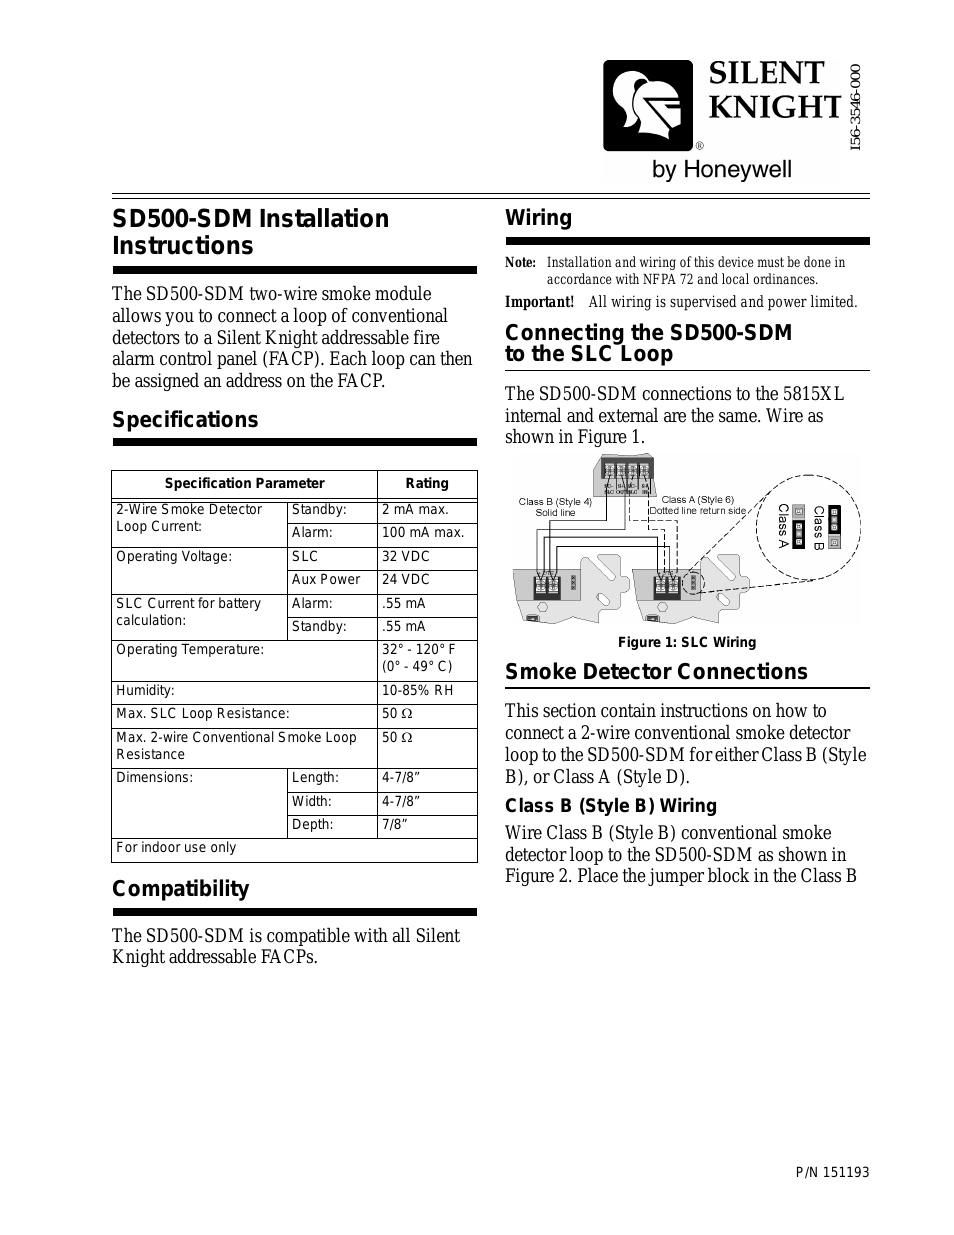 SD500-SDM Smoke Detector Module